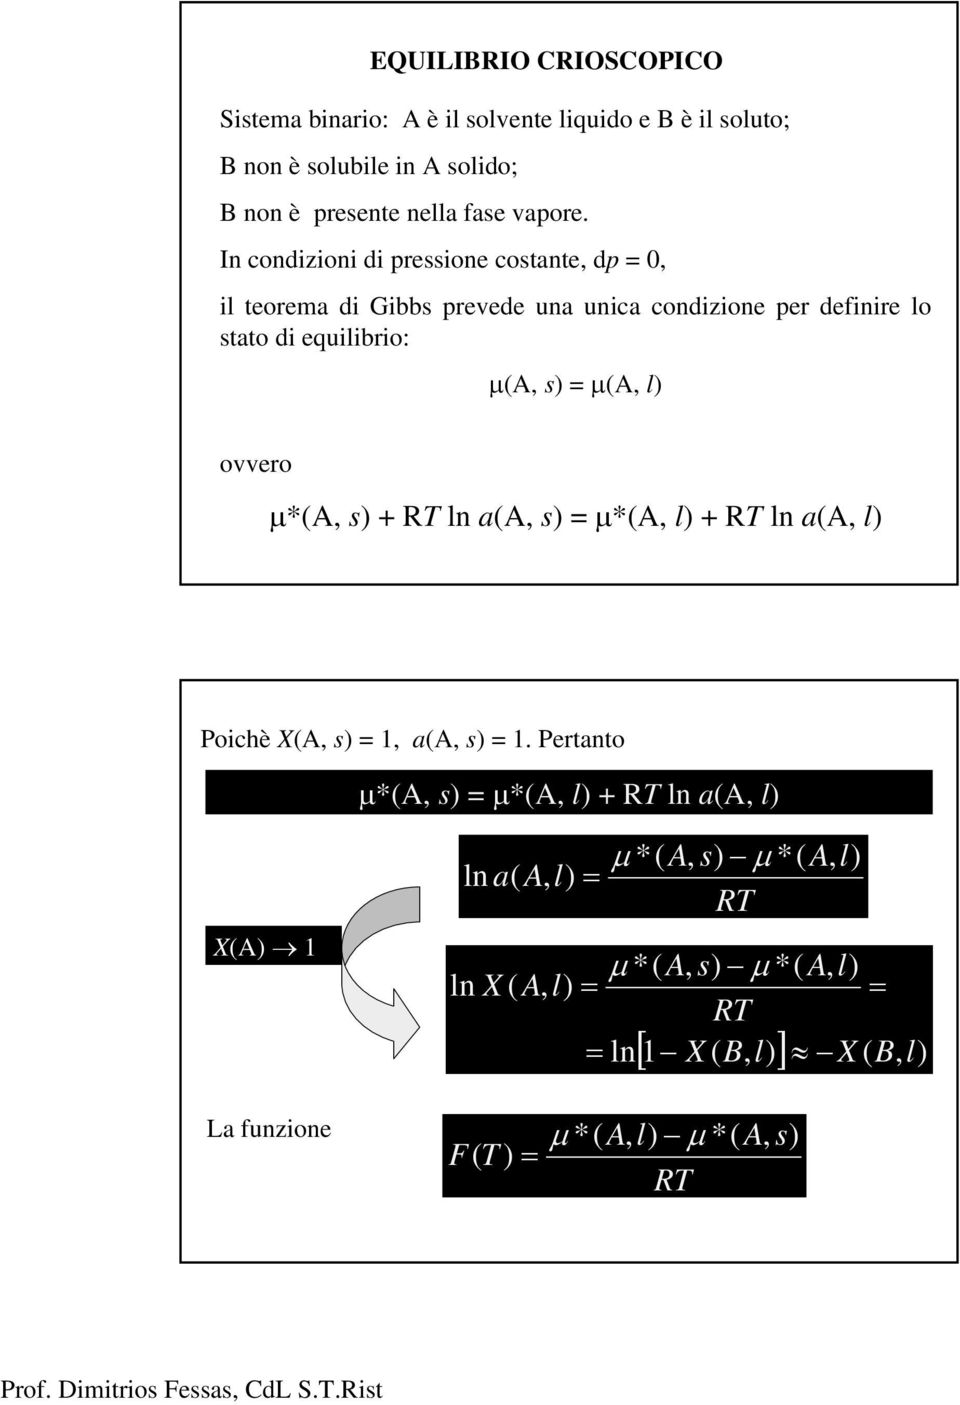 In condzon d ressone costante, d 0, l teorema d Gbbs revede una unca condzone er defnre lo stato d equlbro: μ,